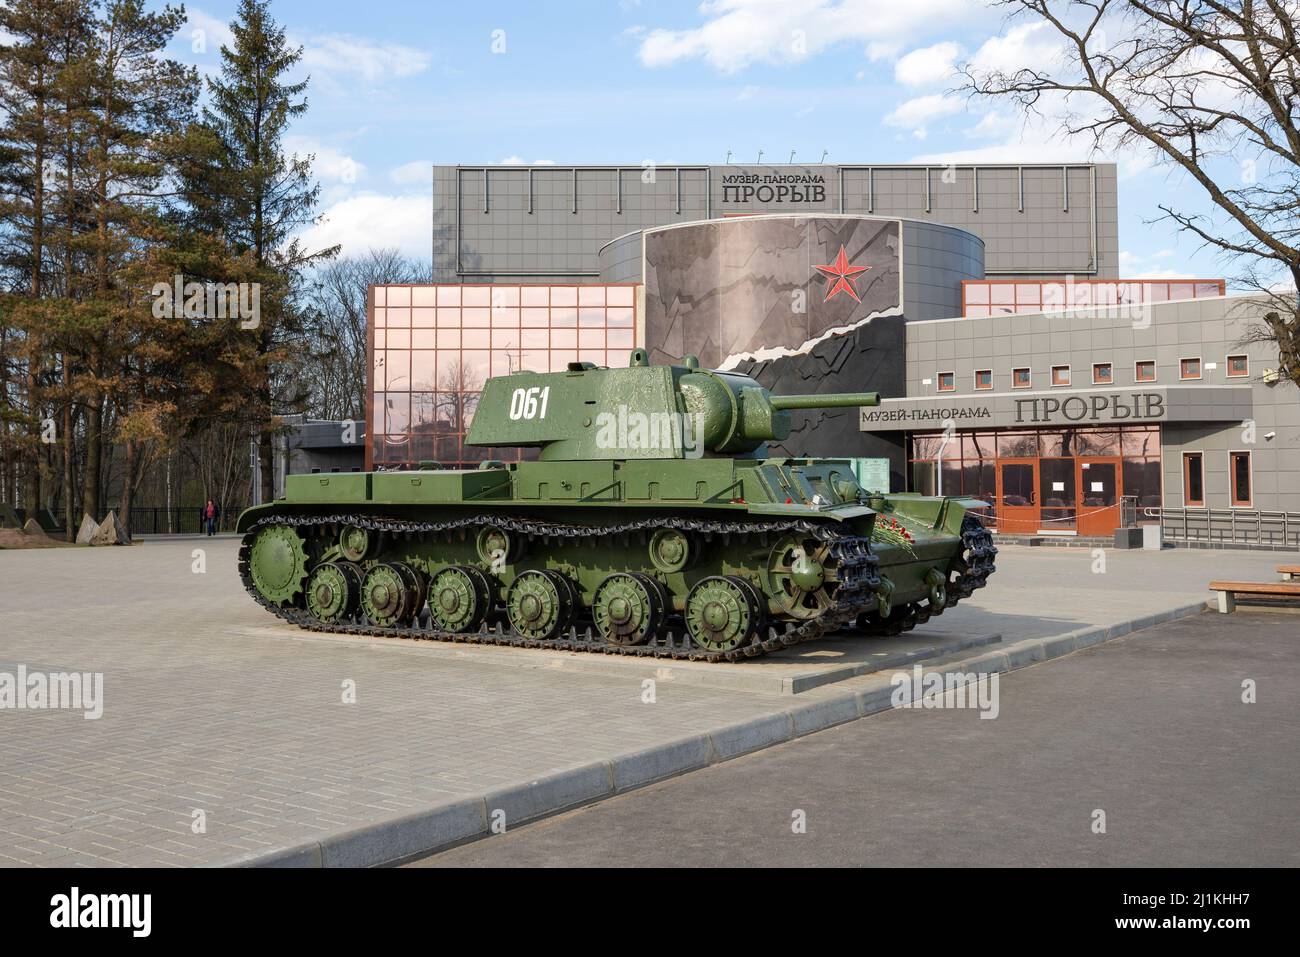 KIROVSK, RUSSIA - 14 MAGGIO 2017: Carro armato sovietico KV-1 all'ingresso del museo-panorama 'Breakthrough'. Kirovsk, regione di Leningrad Foto Stock